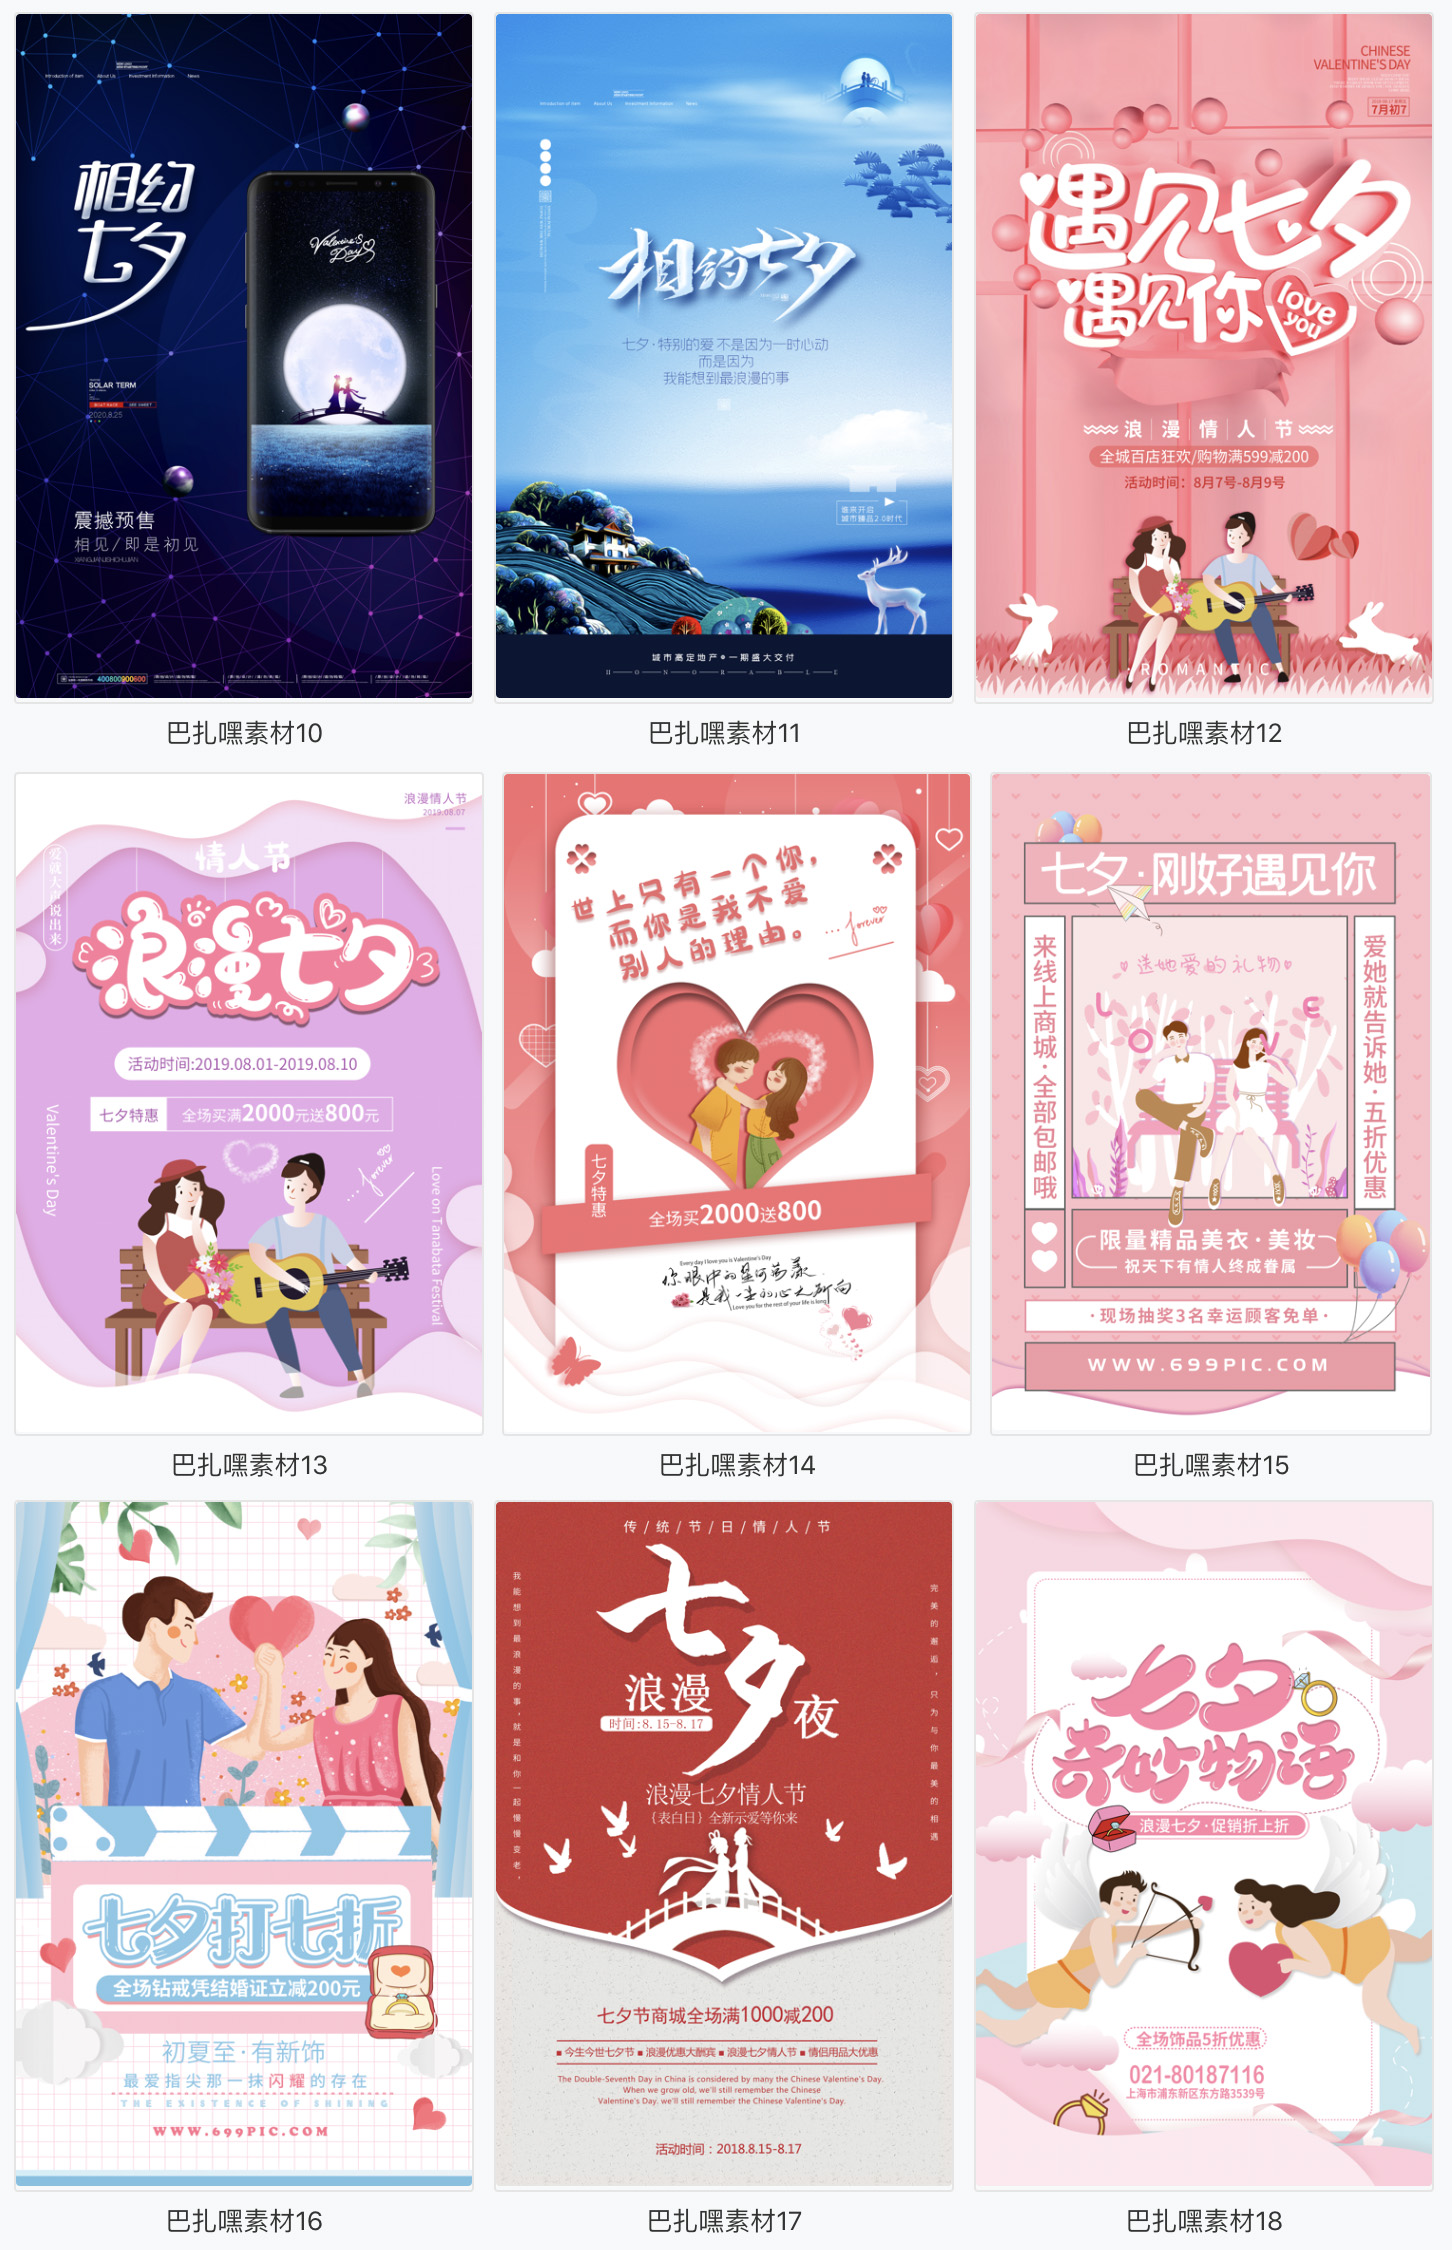 七夕牛郎织女鹊桥会情人节日宣传促销活动海报展板PSD模板素材